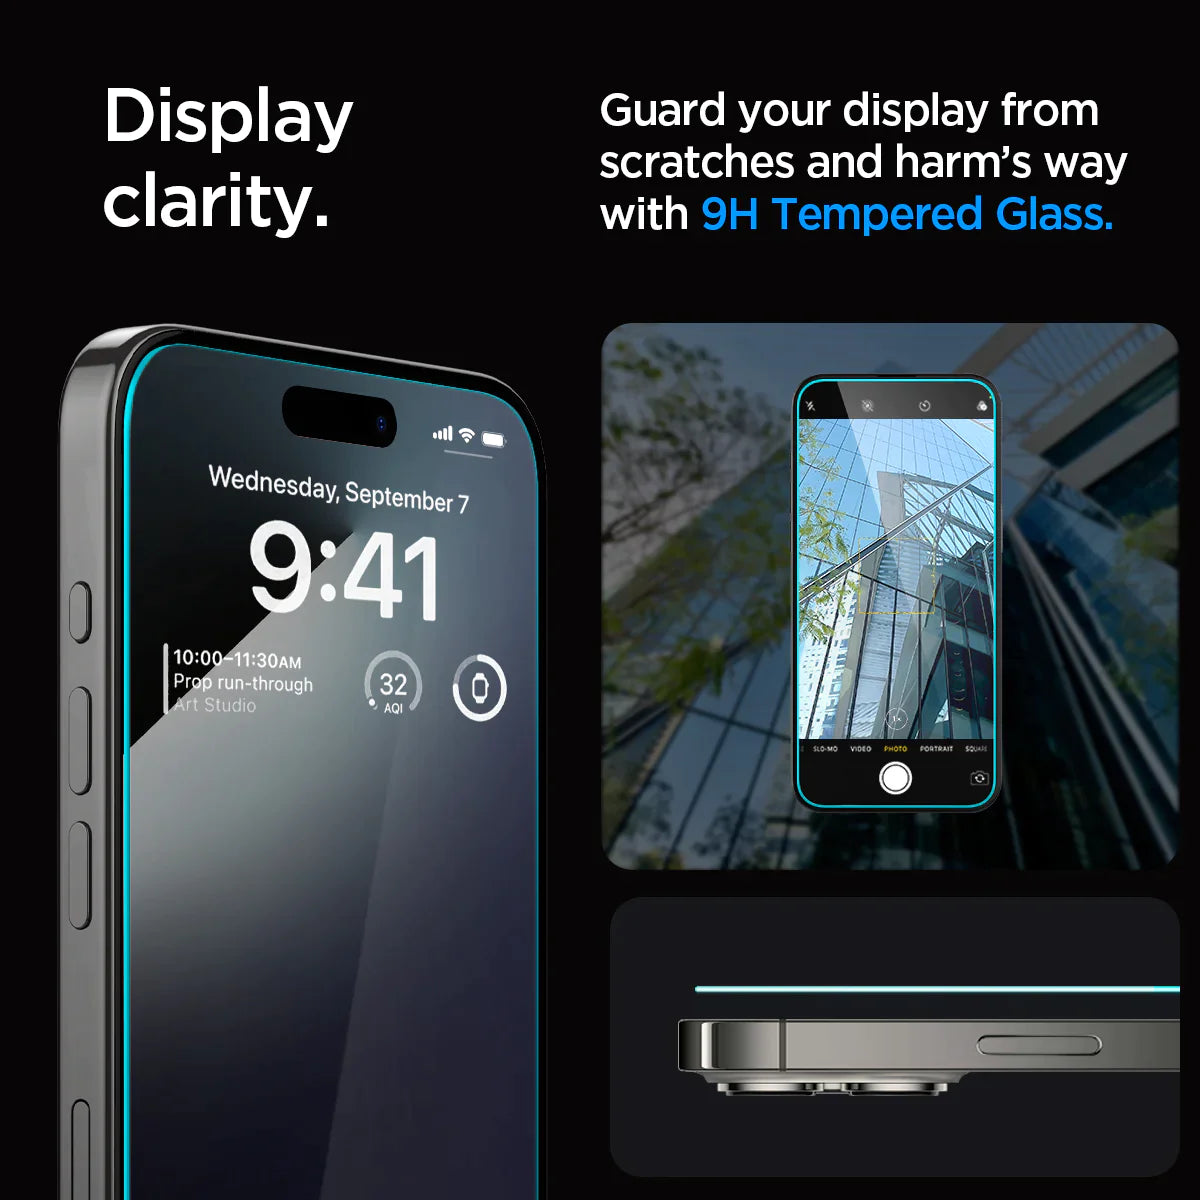 Spigen iPhone 15 Pro Max Screen Protector EZ FIT GLAS.tR - 2 Pack